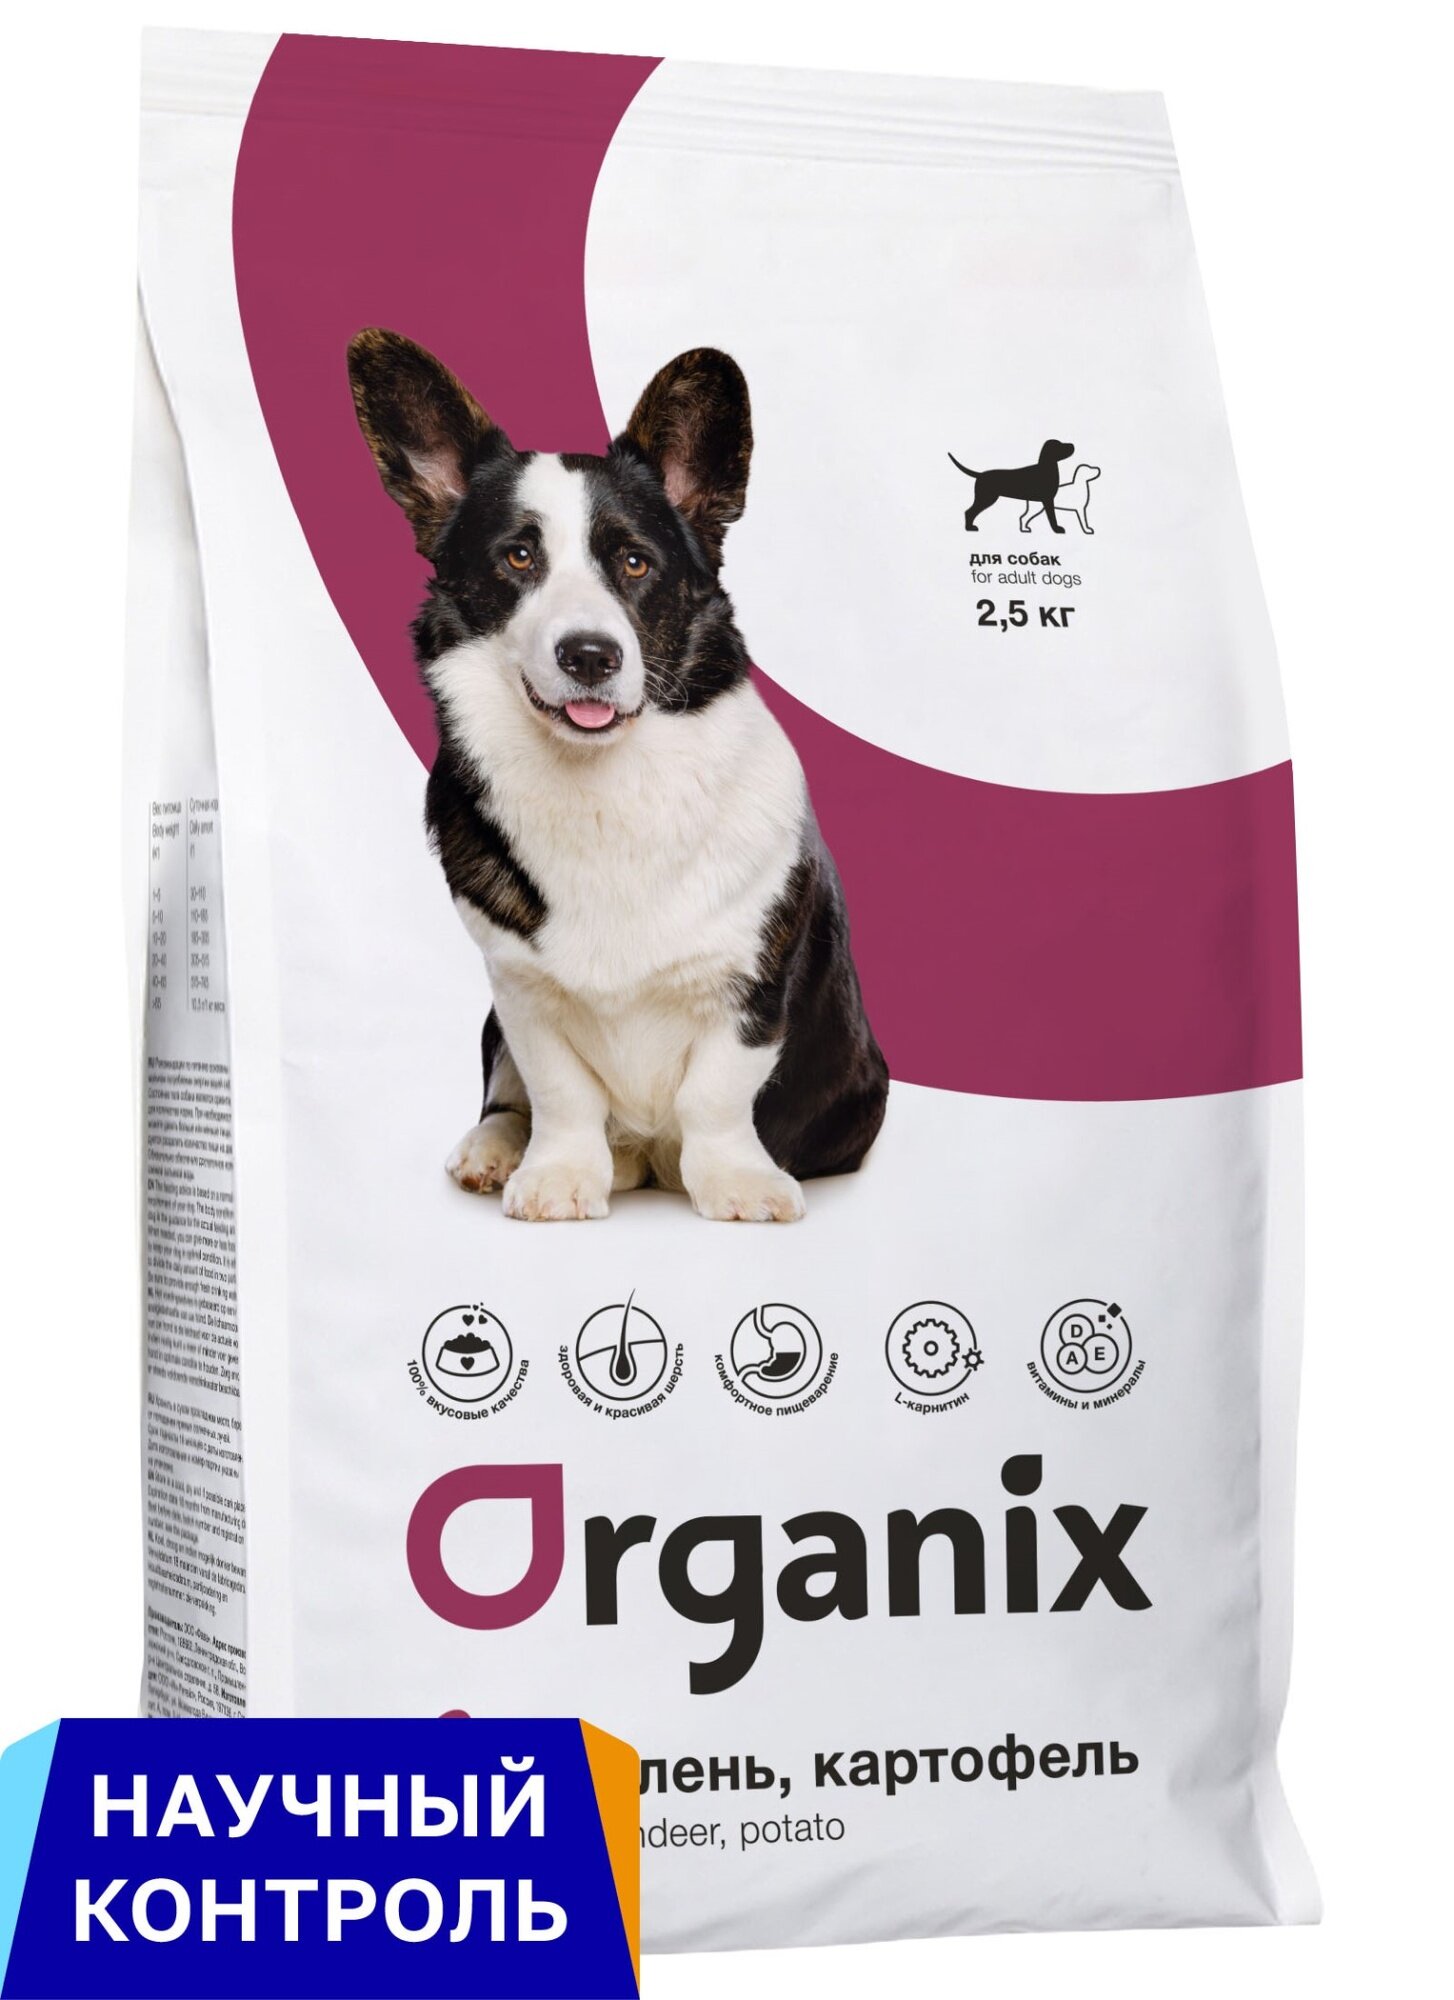 Organix полнорационный сухой корм для взрослых собак всех пород с олениной и картофелем, 2,5 кг